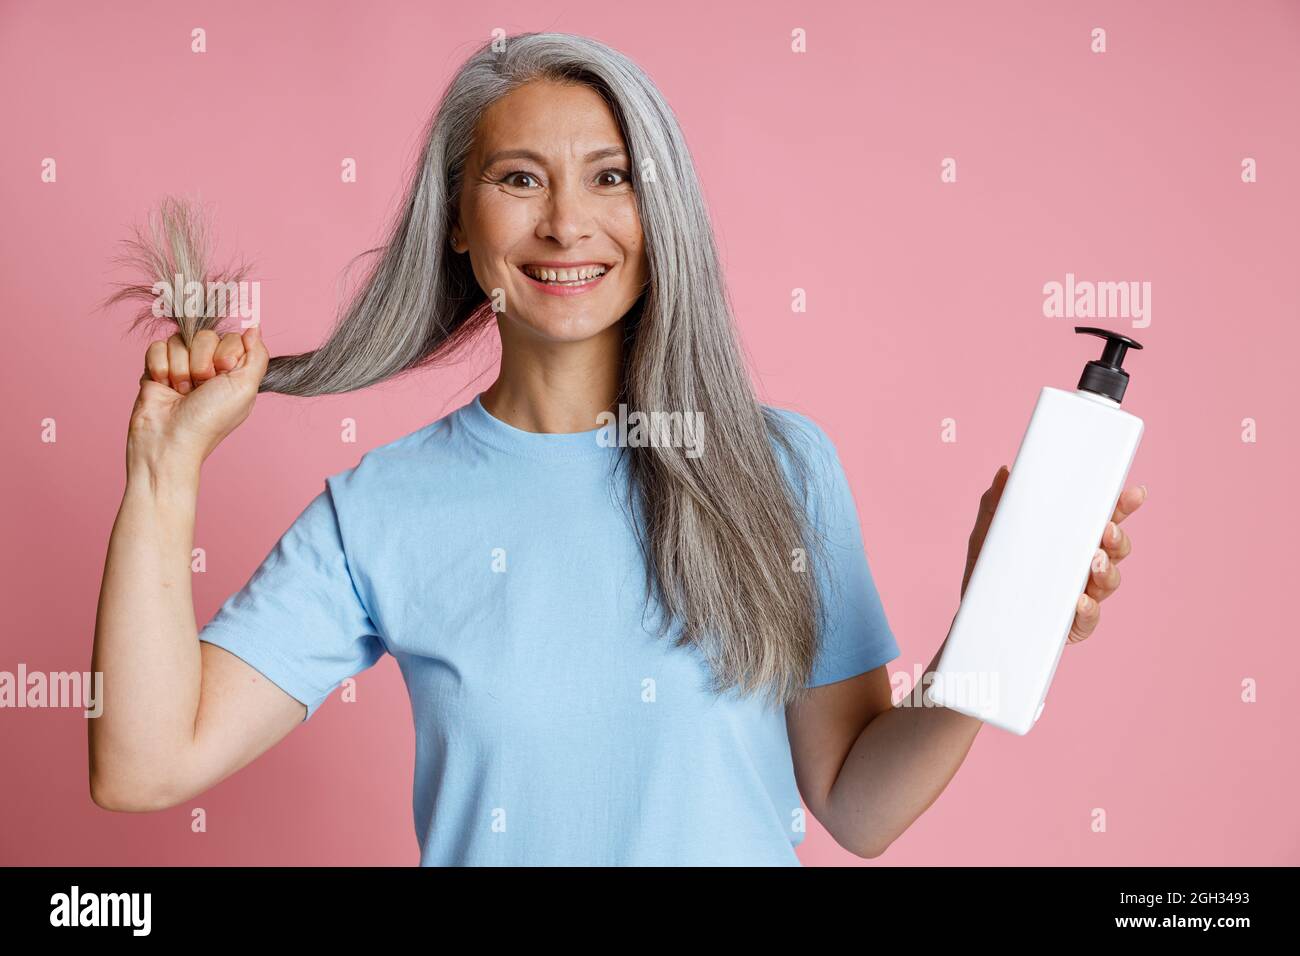 Asiatische Frau mittleren Alters zeigt gesunde silberne Haare und leere Spenderflasche auf rosa Hintergrund Stockfoto